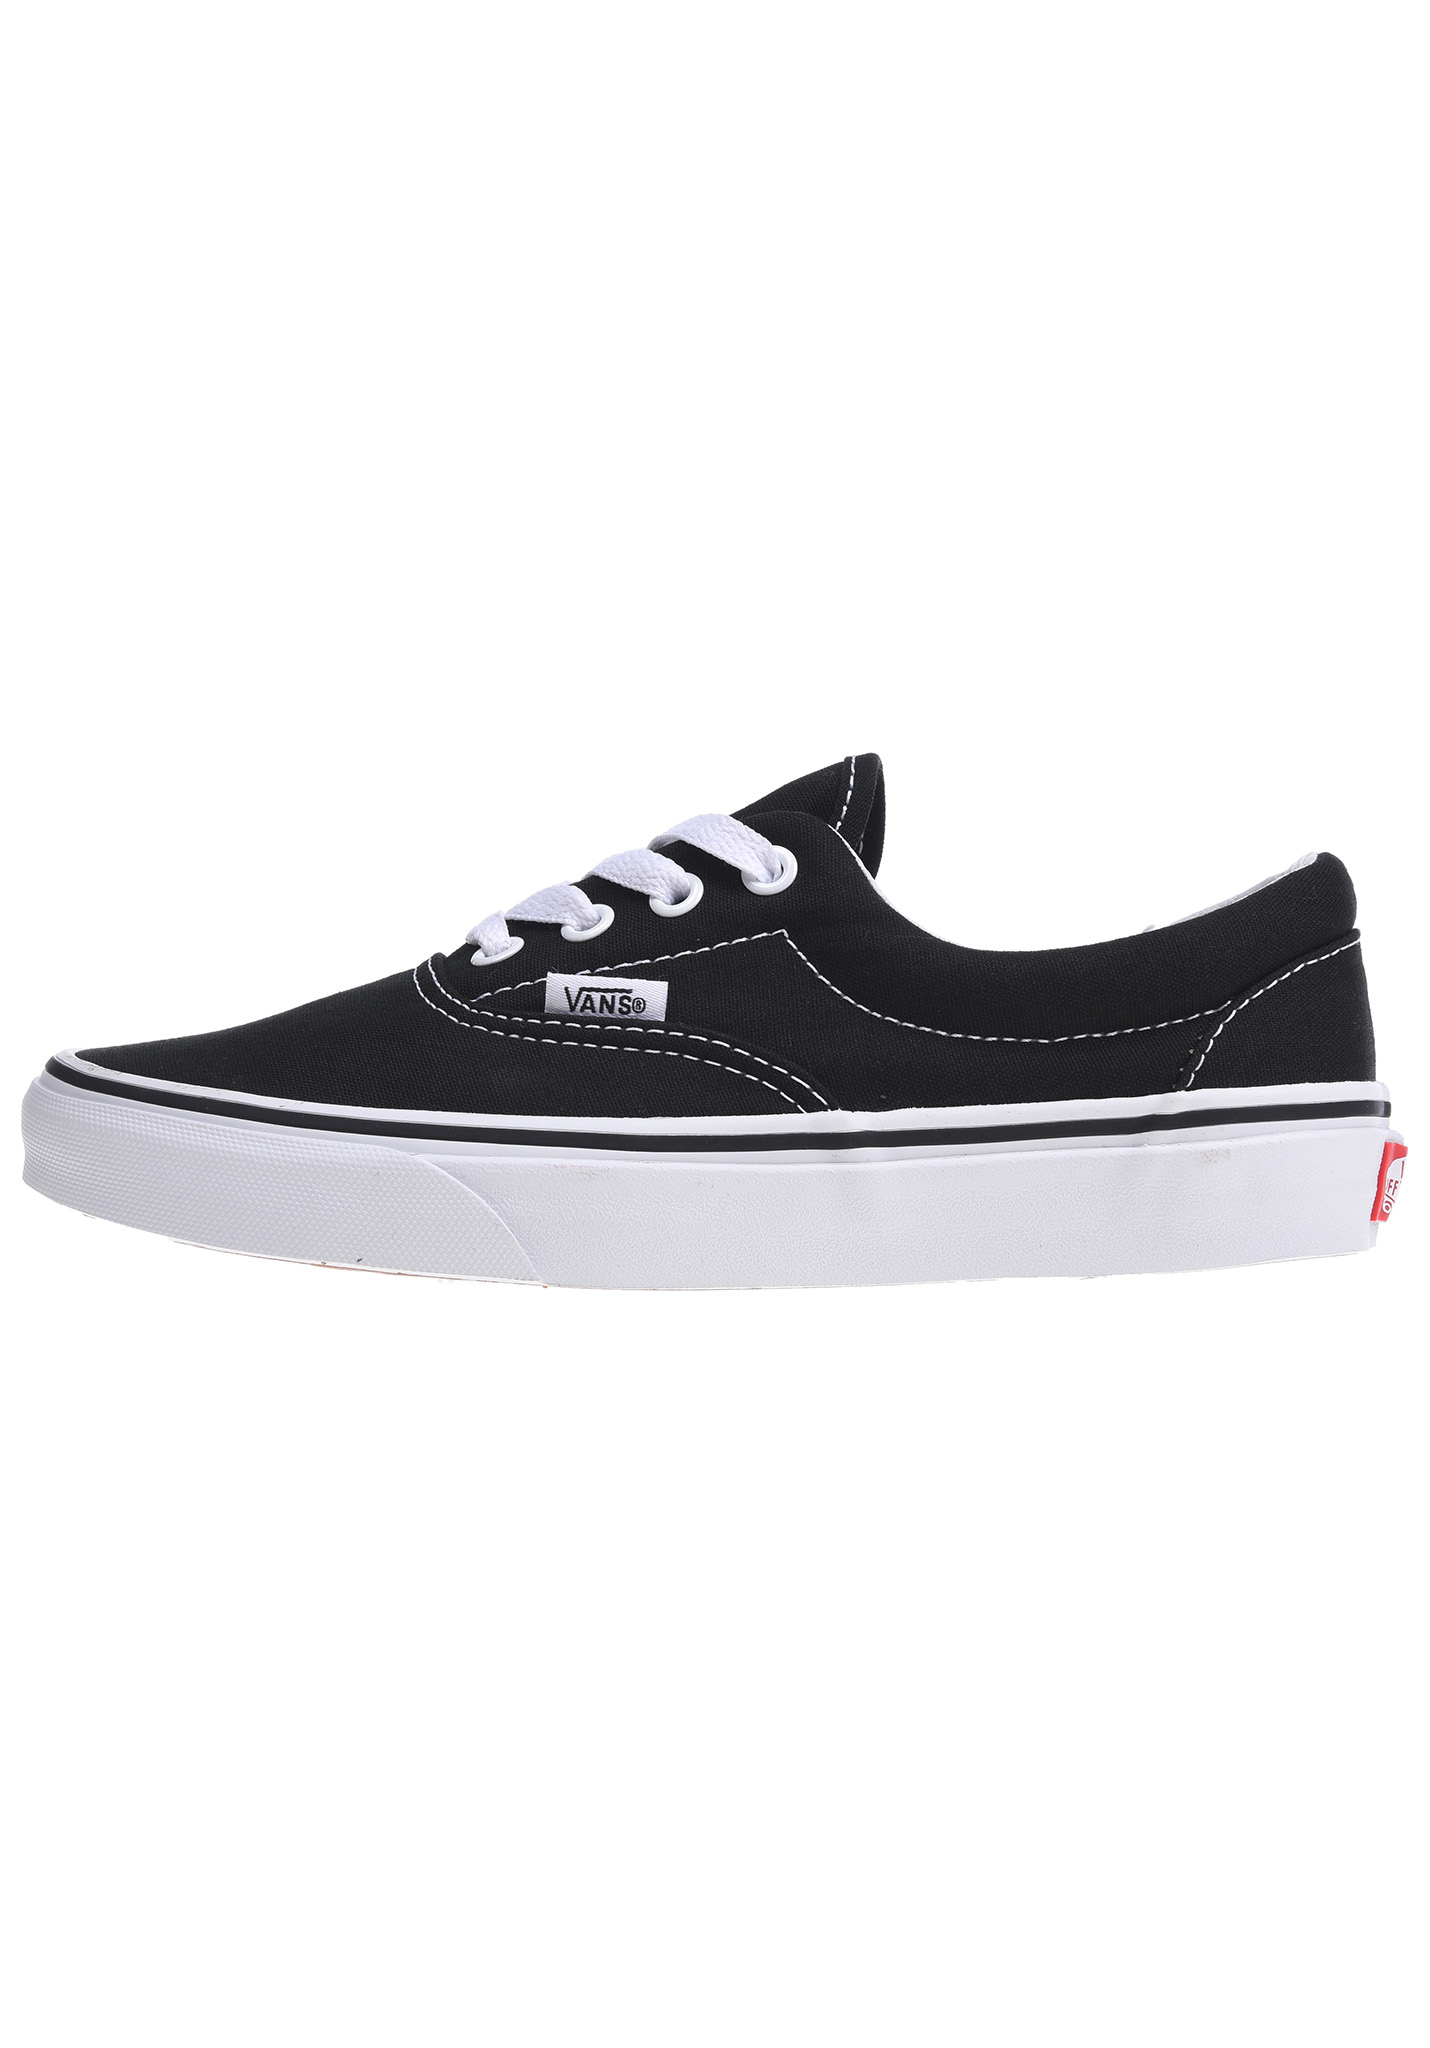 Vans Era Sneaker black + white 48